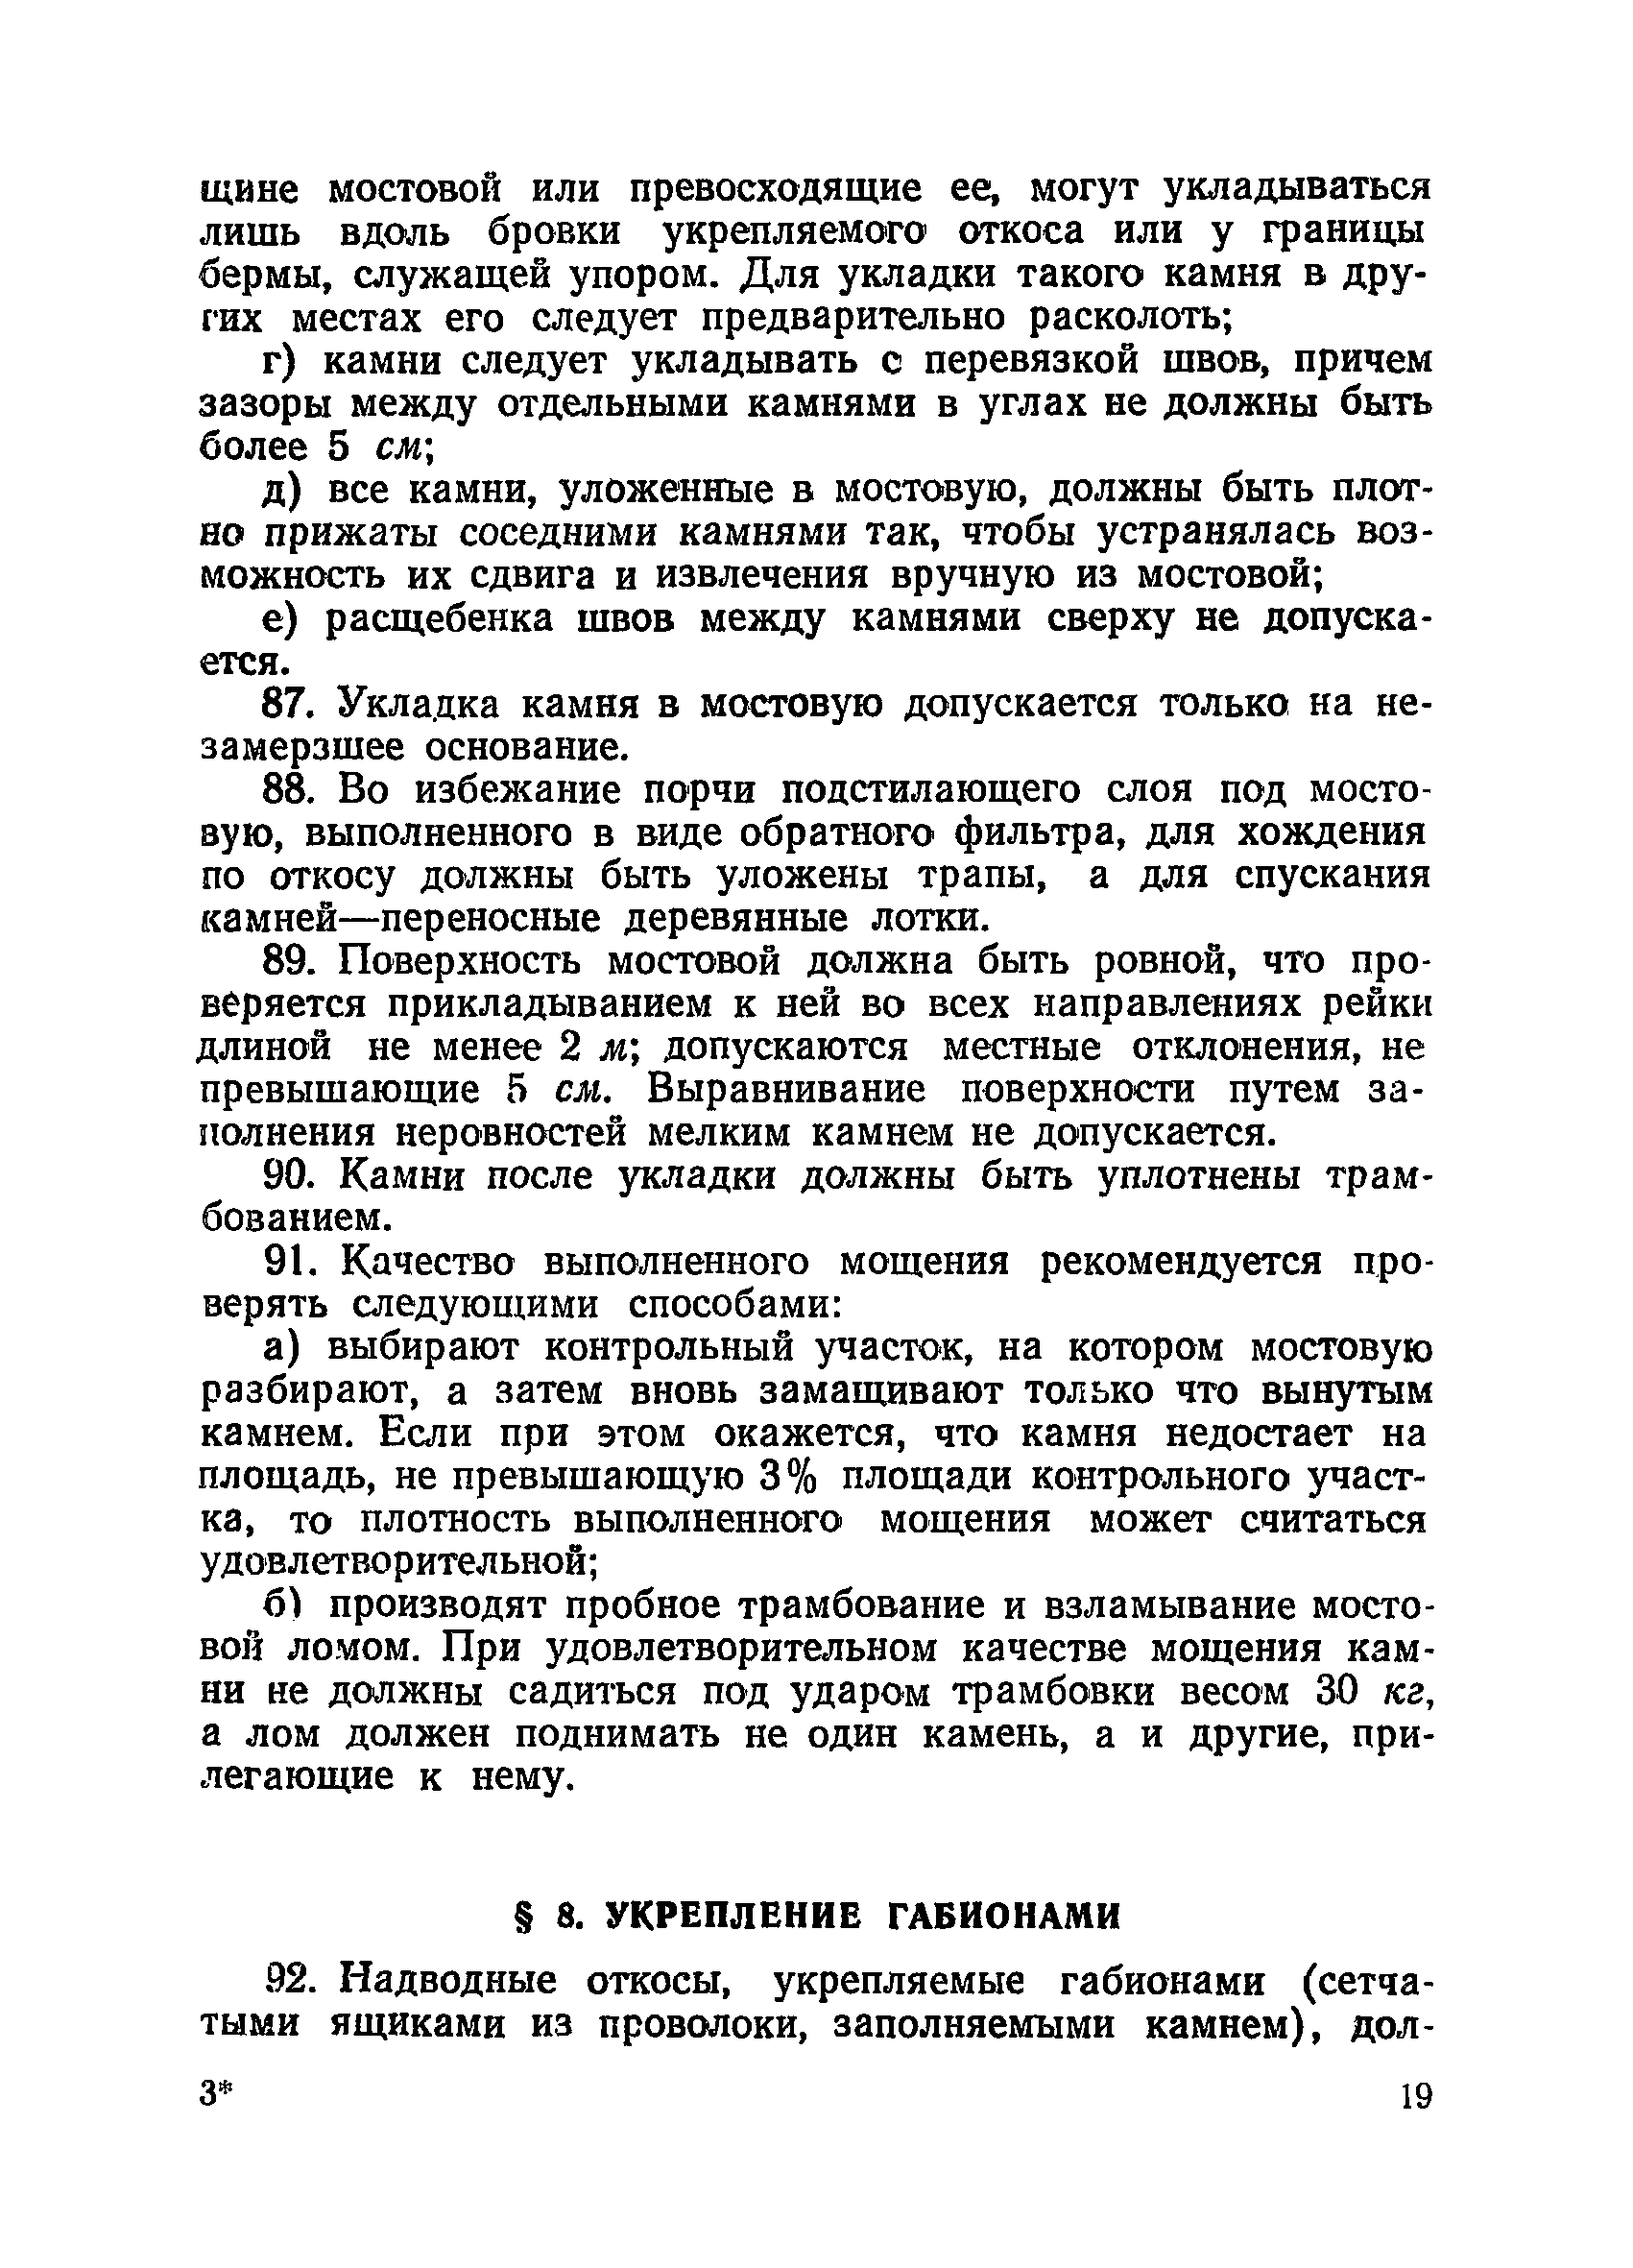 ВСН 34/XIX-60